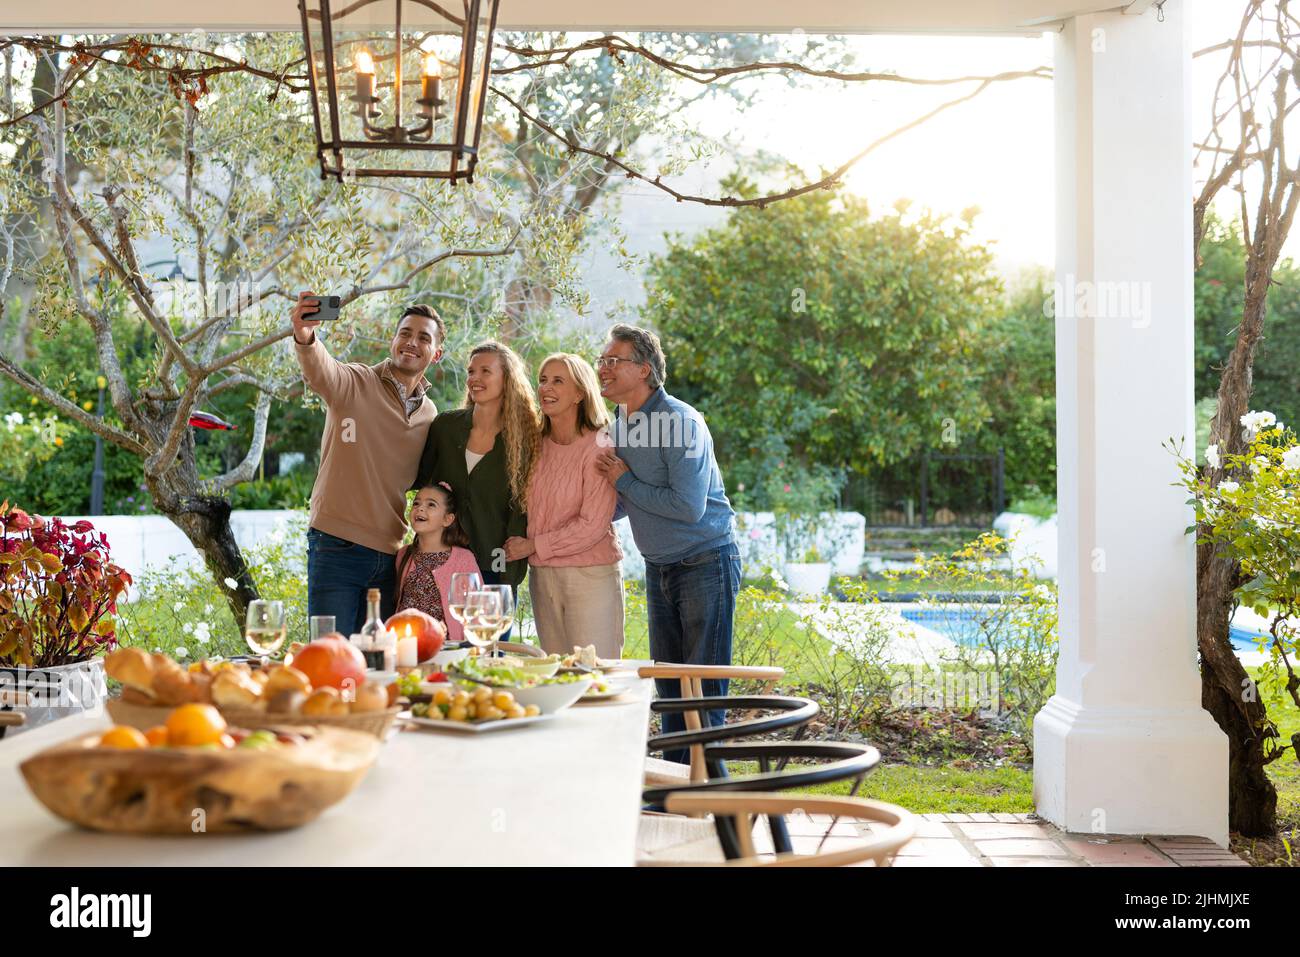 Bild einer glücklichen, mehrgeneration kaukasischen Familie, die nach dem Abendessen auf der Terrasse Selfie macht Stockfoto